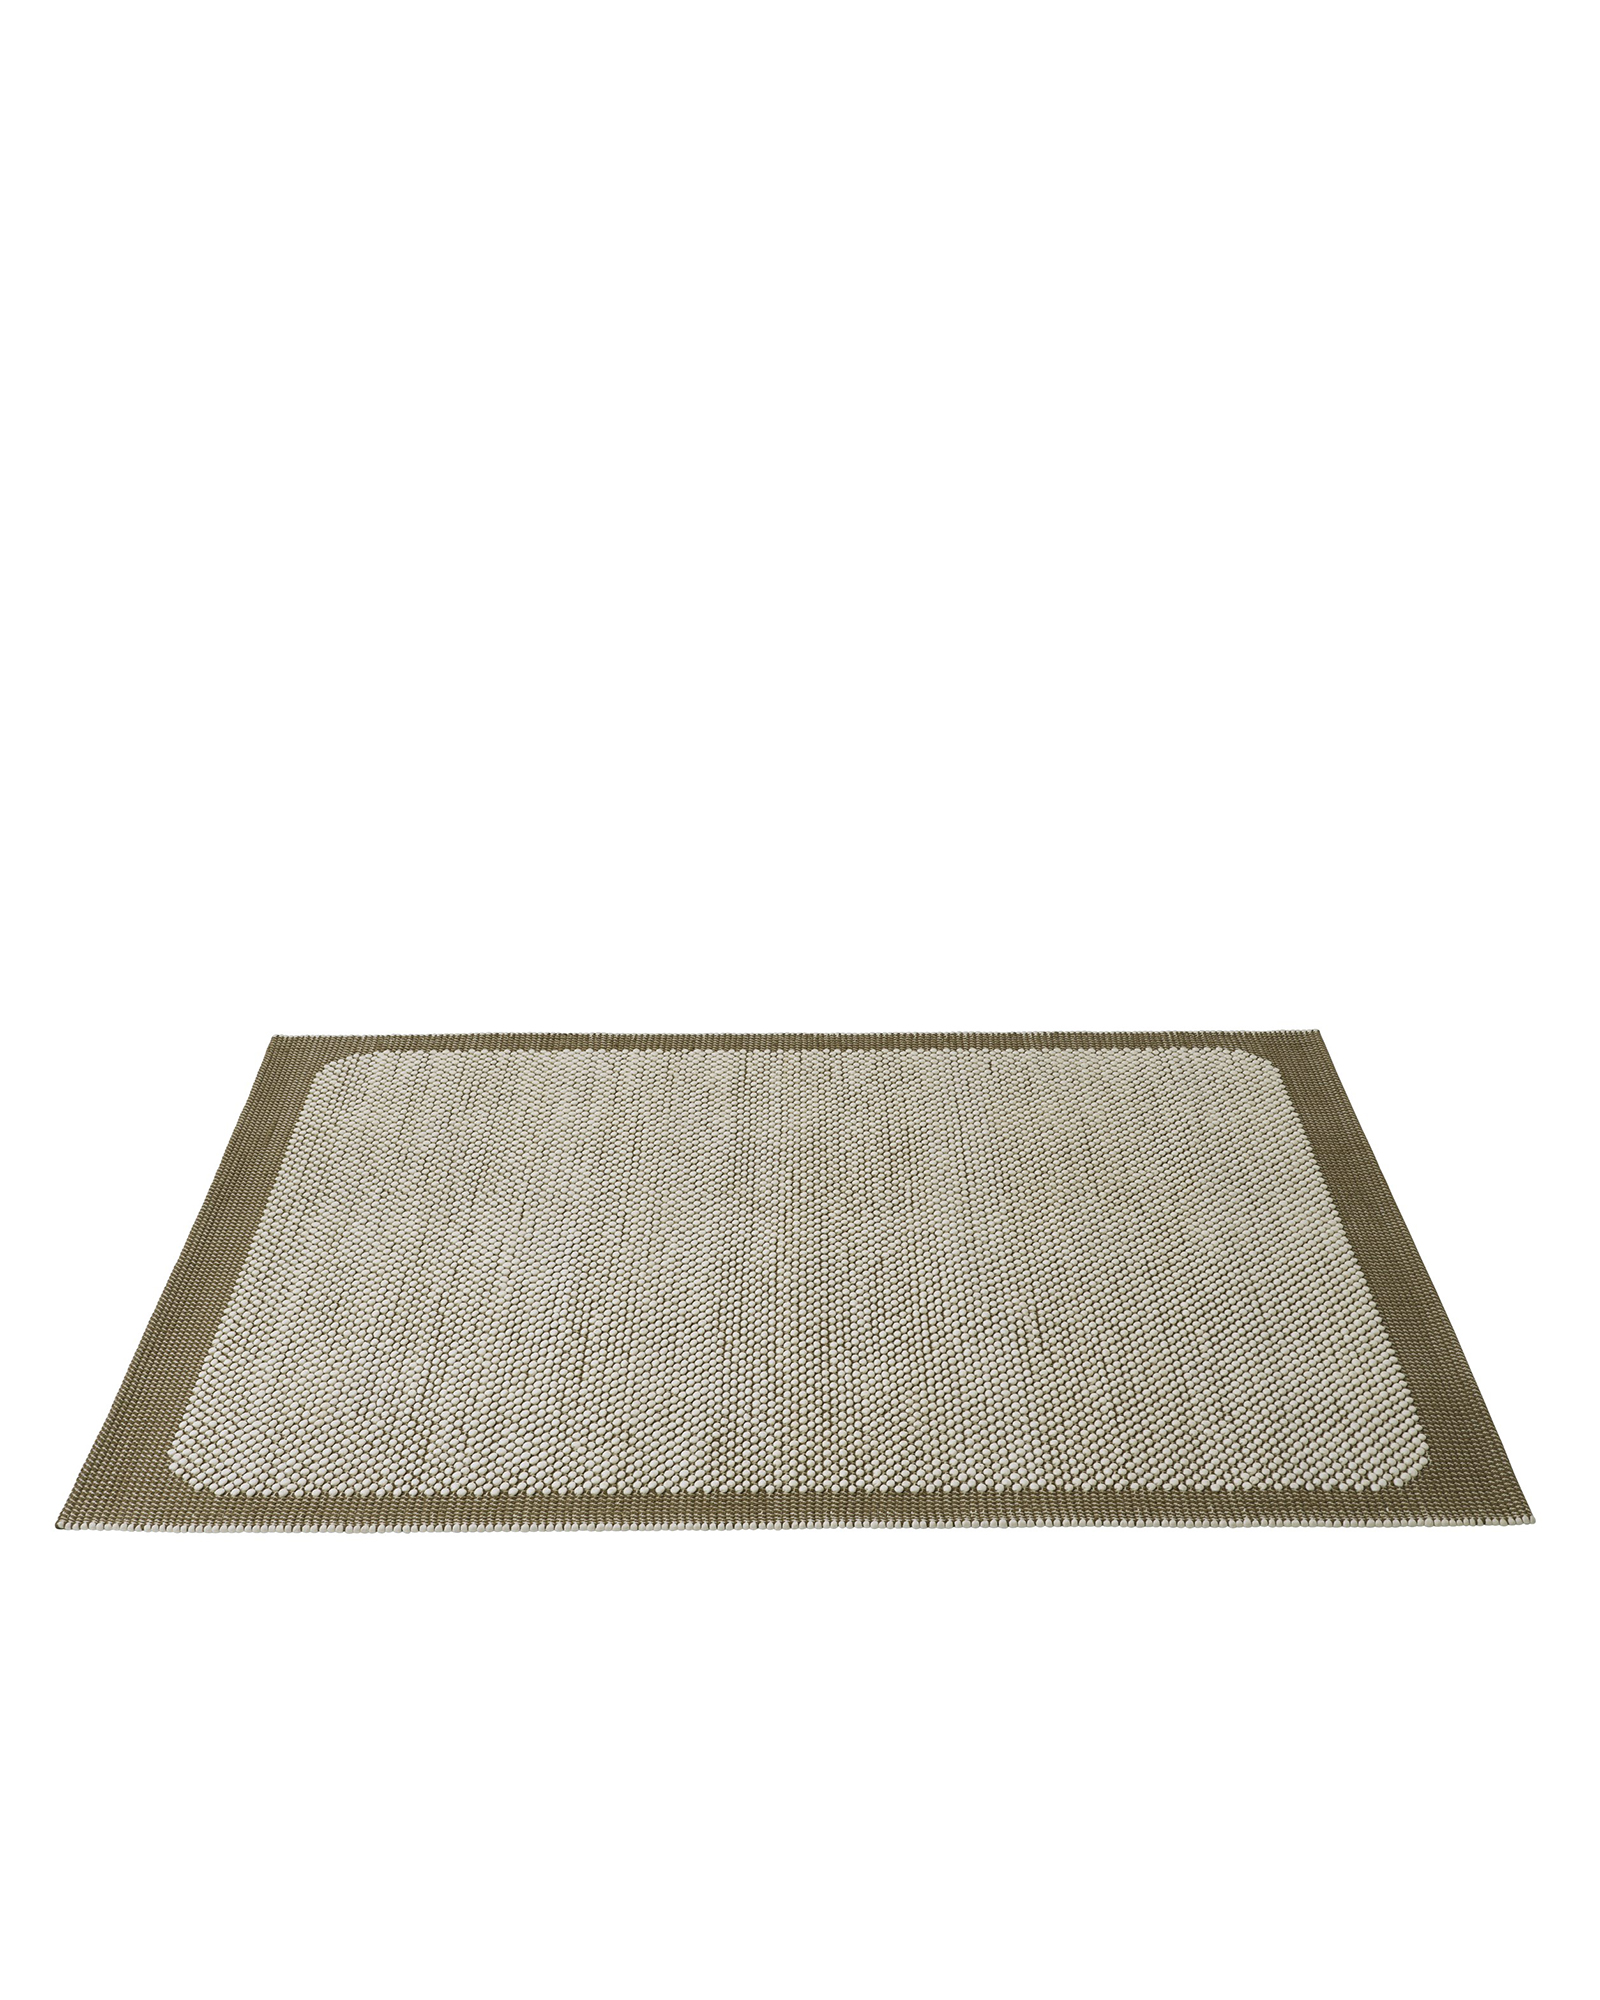 Pebble-rug-200×300-brown-green-angle